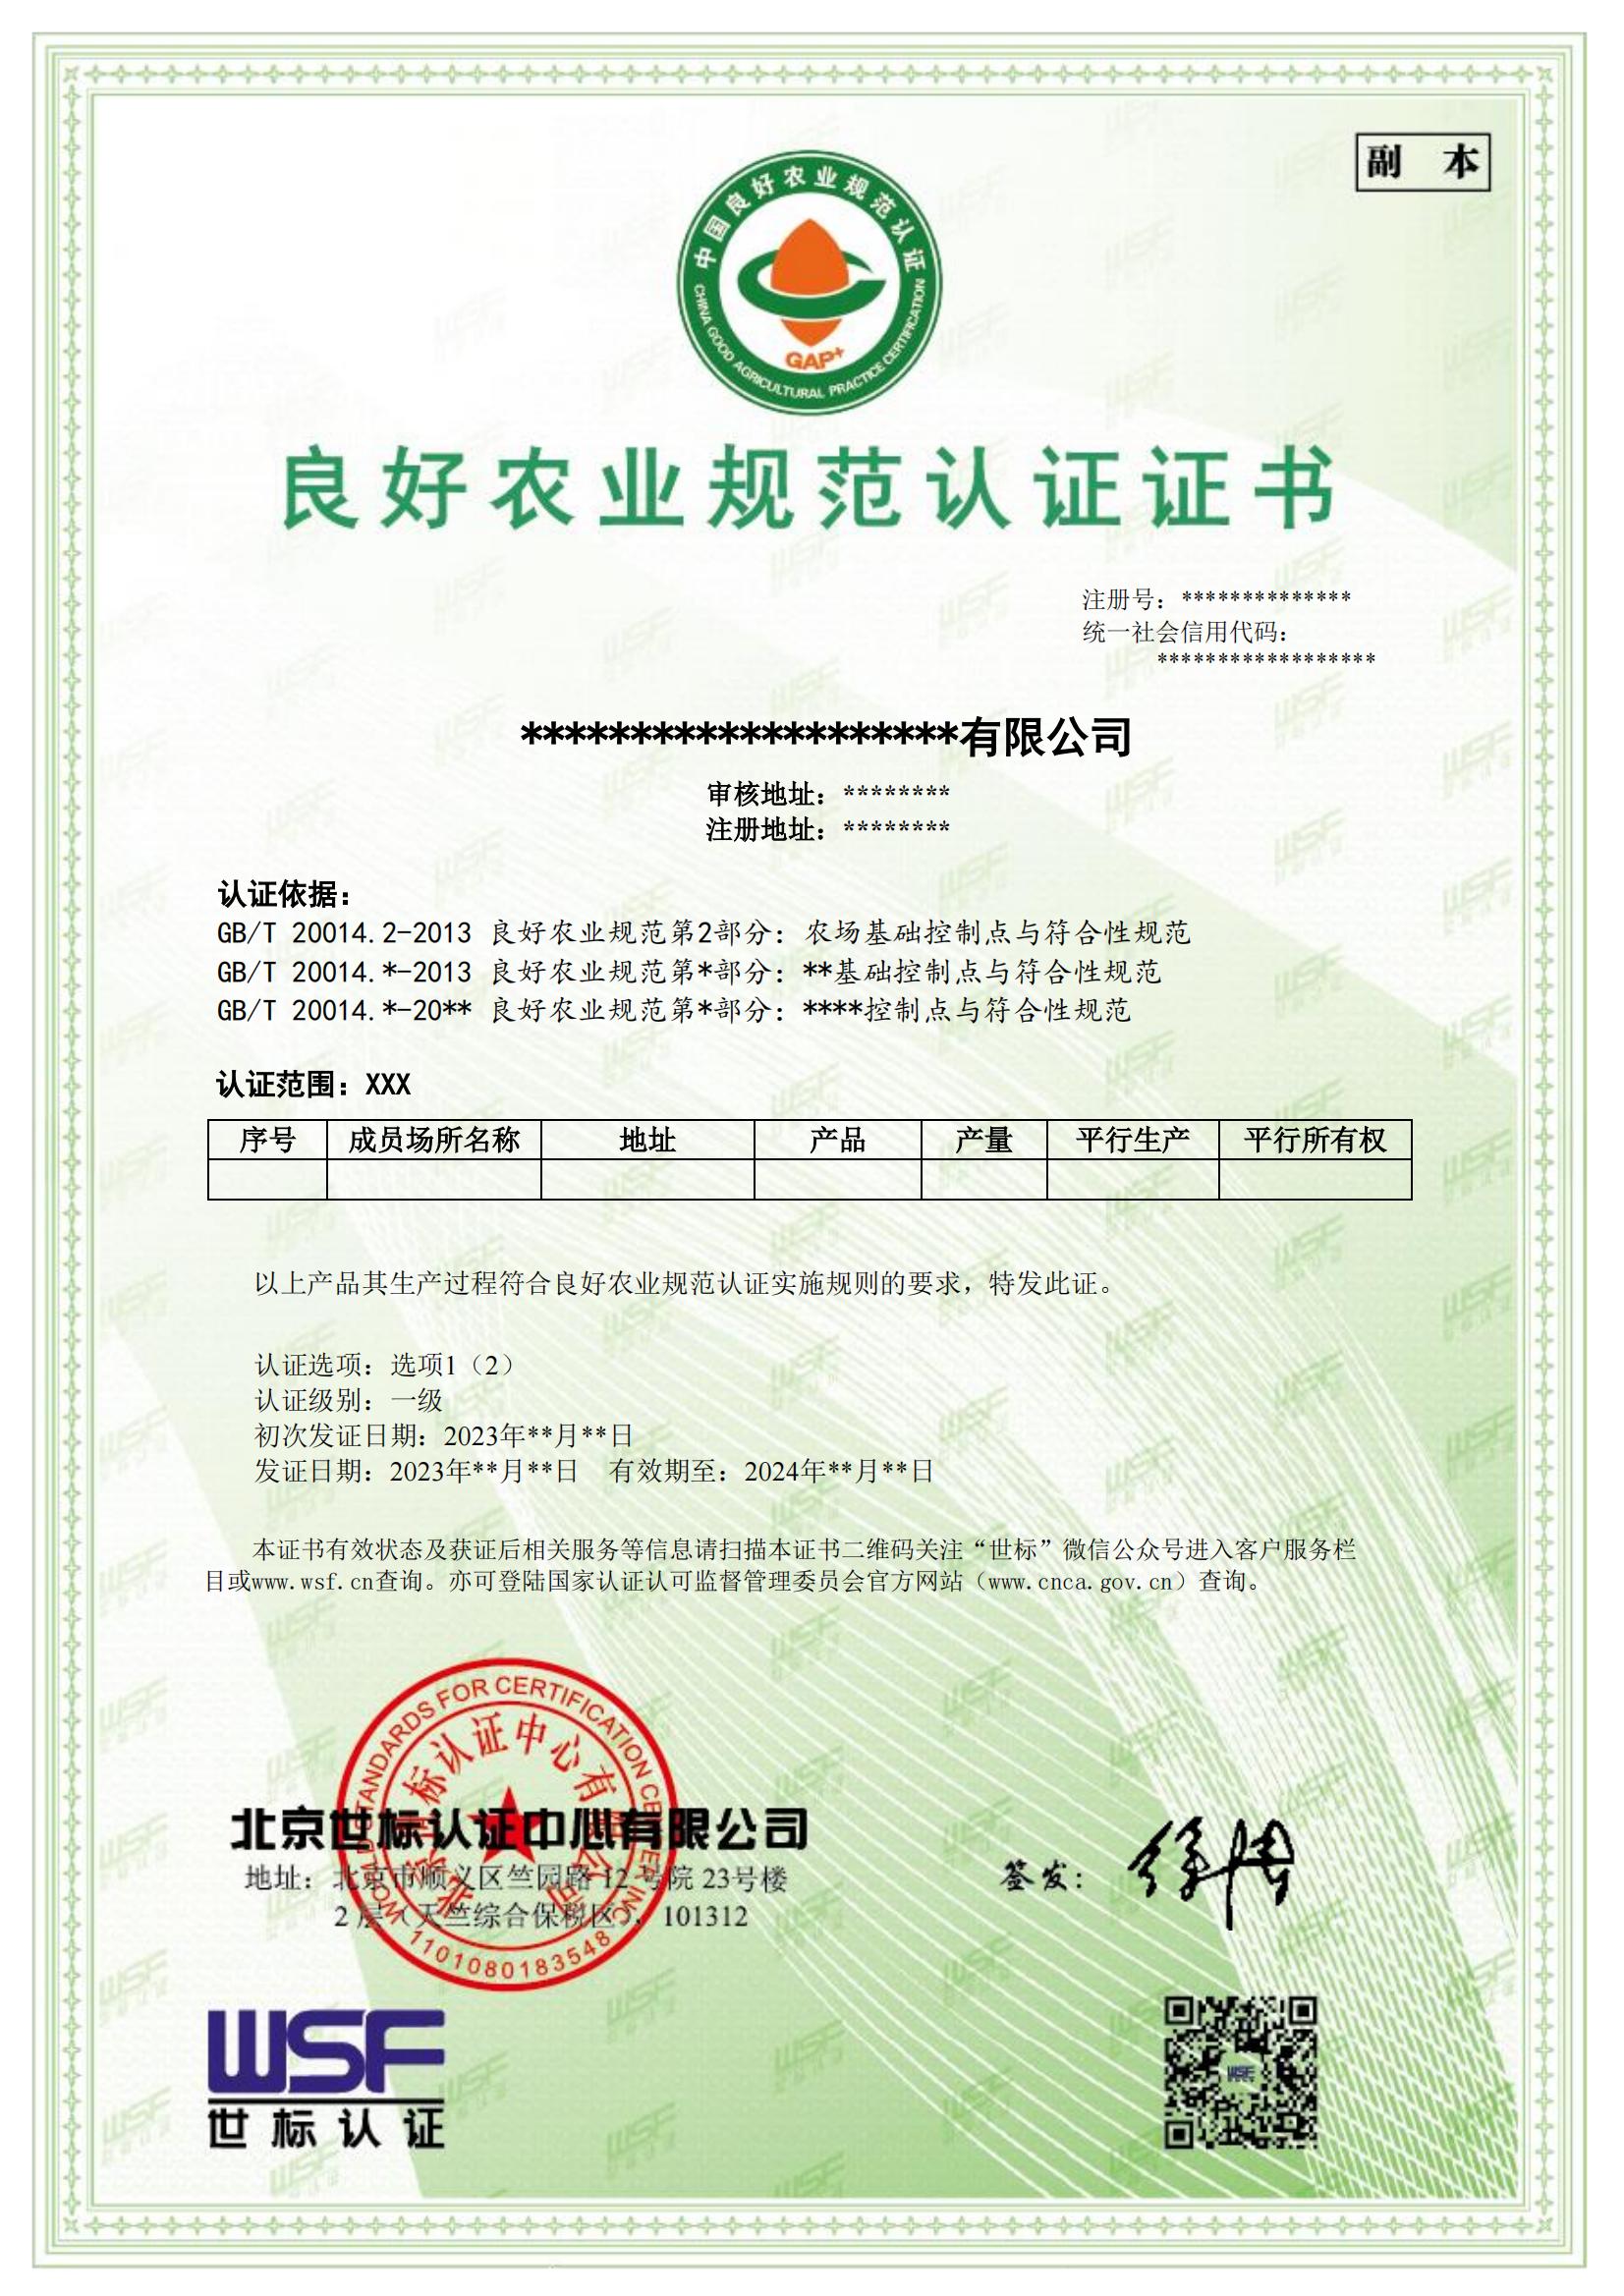 良好农业规范GAP+认证证书样本-中文_00.jpg